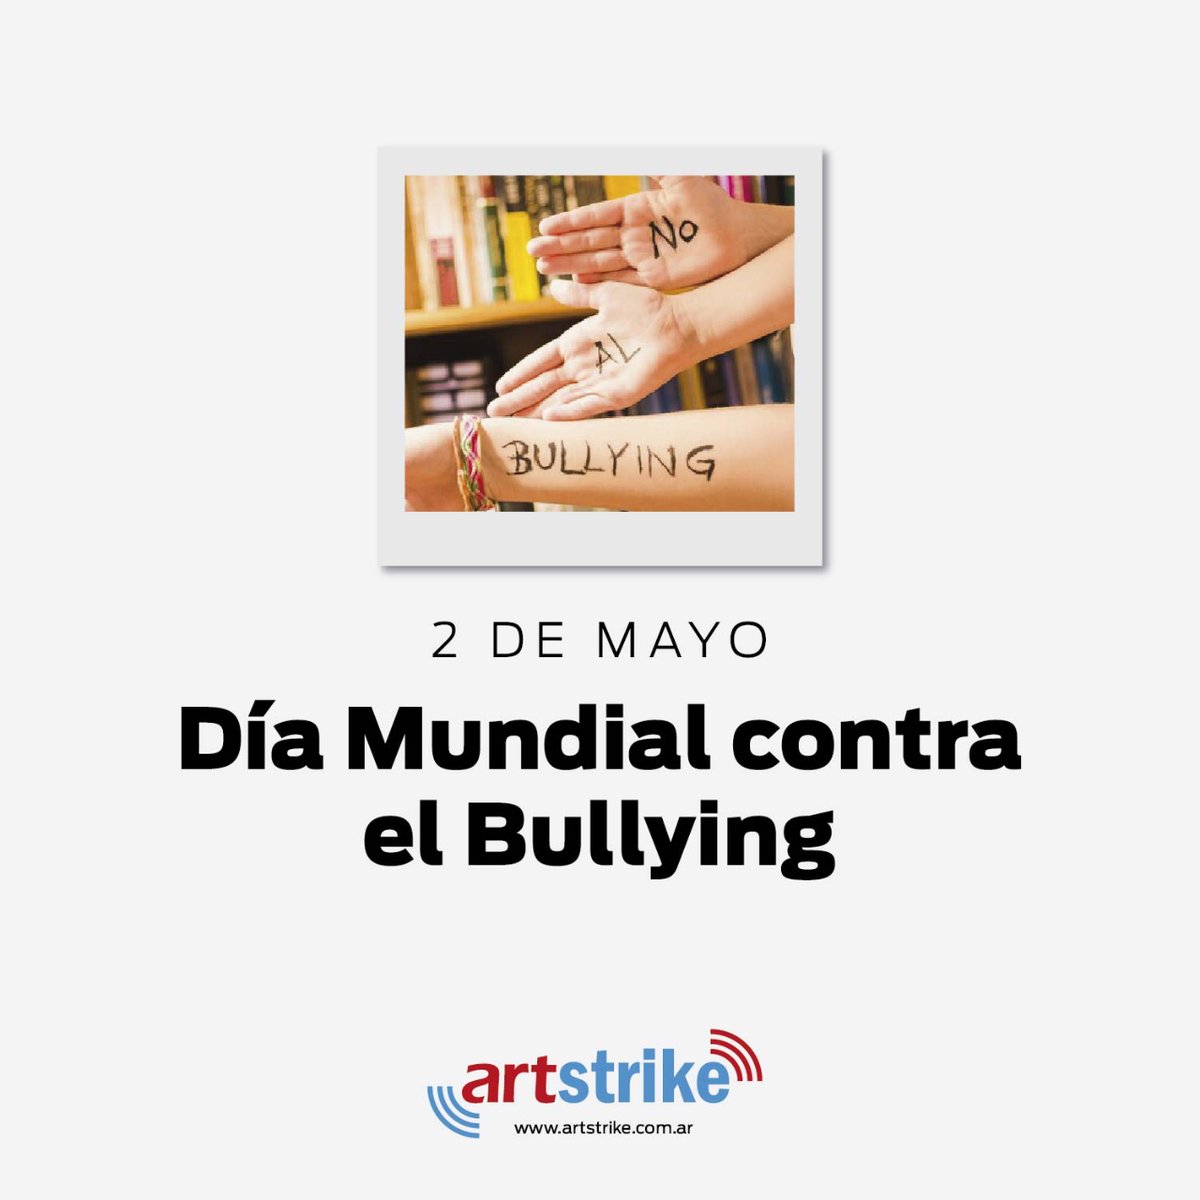 Día Mundial Contra el Bullying ✋
2 de Mayo

Te esperamos en artstrike.com.ar

#ArtStrike #Diseño #Comunicación #Marketing #Publicidad #DiseñoWeb #Efemérides #NoBullying #NoAlBullying